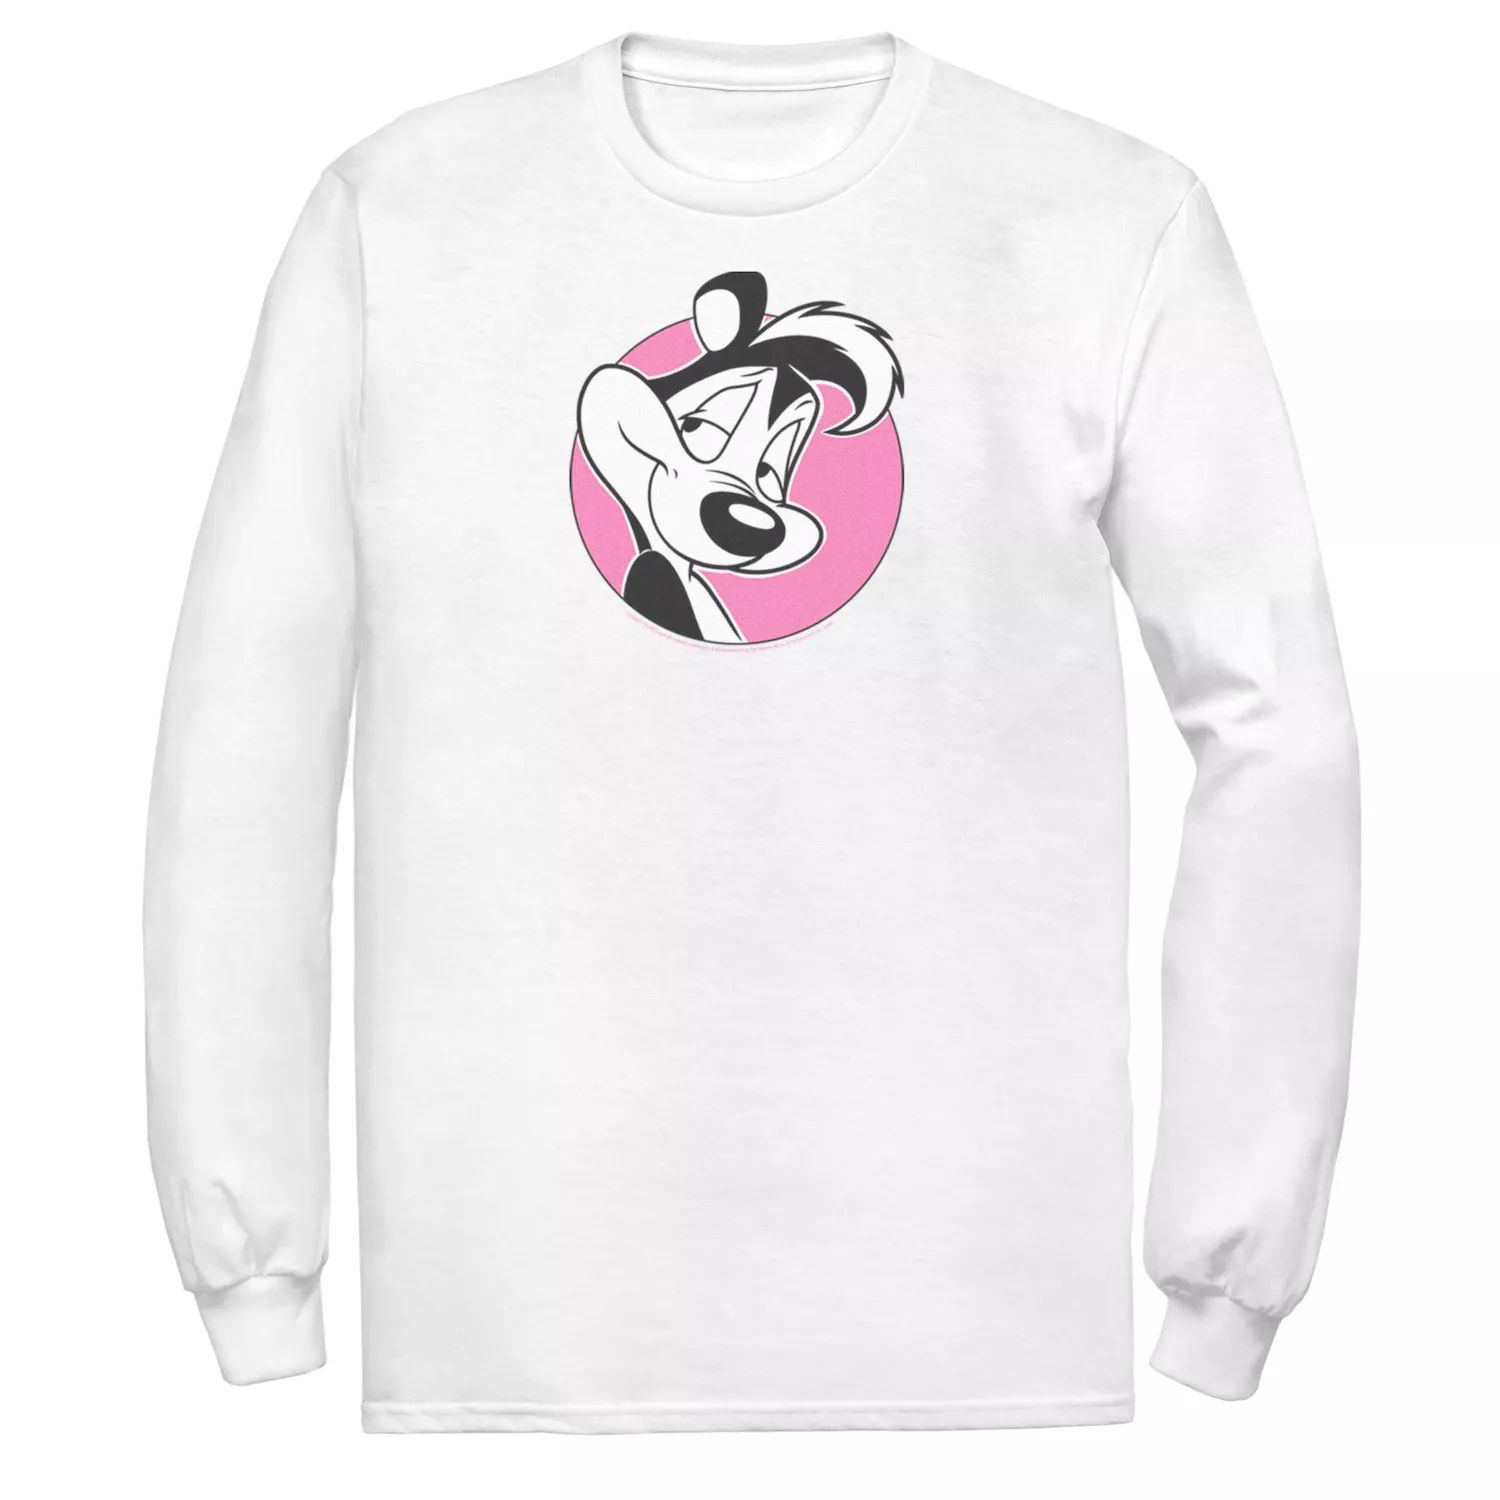 цена Мужская розовая футболка с портретом в форме круга Looney Tunes Pepe Le Pew Licensed Character